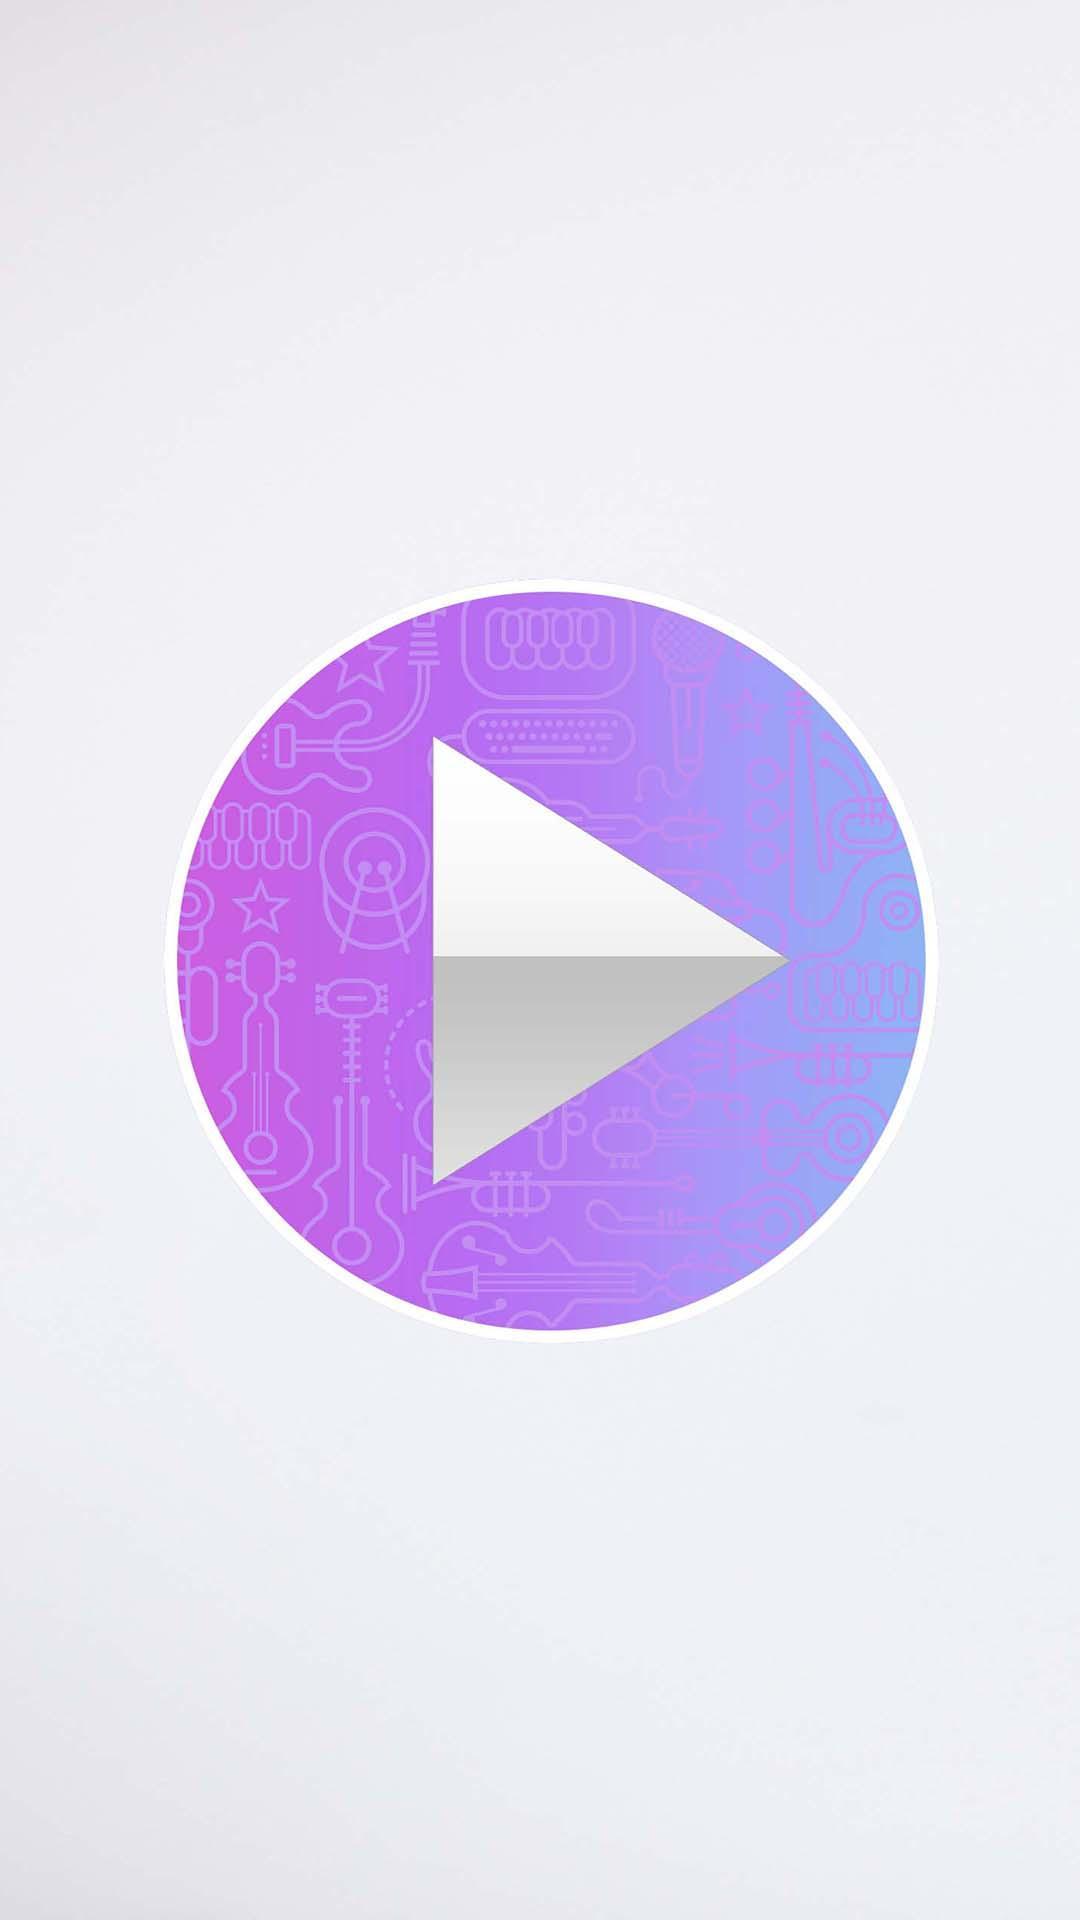 Descargar Musica Mp3 Y Videos Zene For Android Apk Download - bajar musica de como tener robux gratis gratis descargamimp3 com